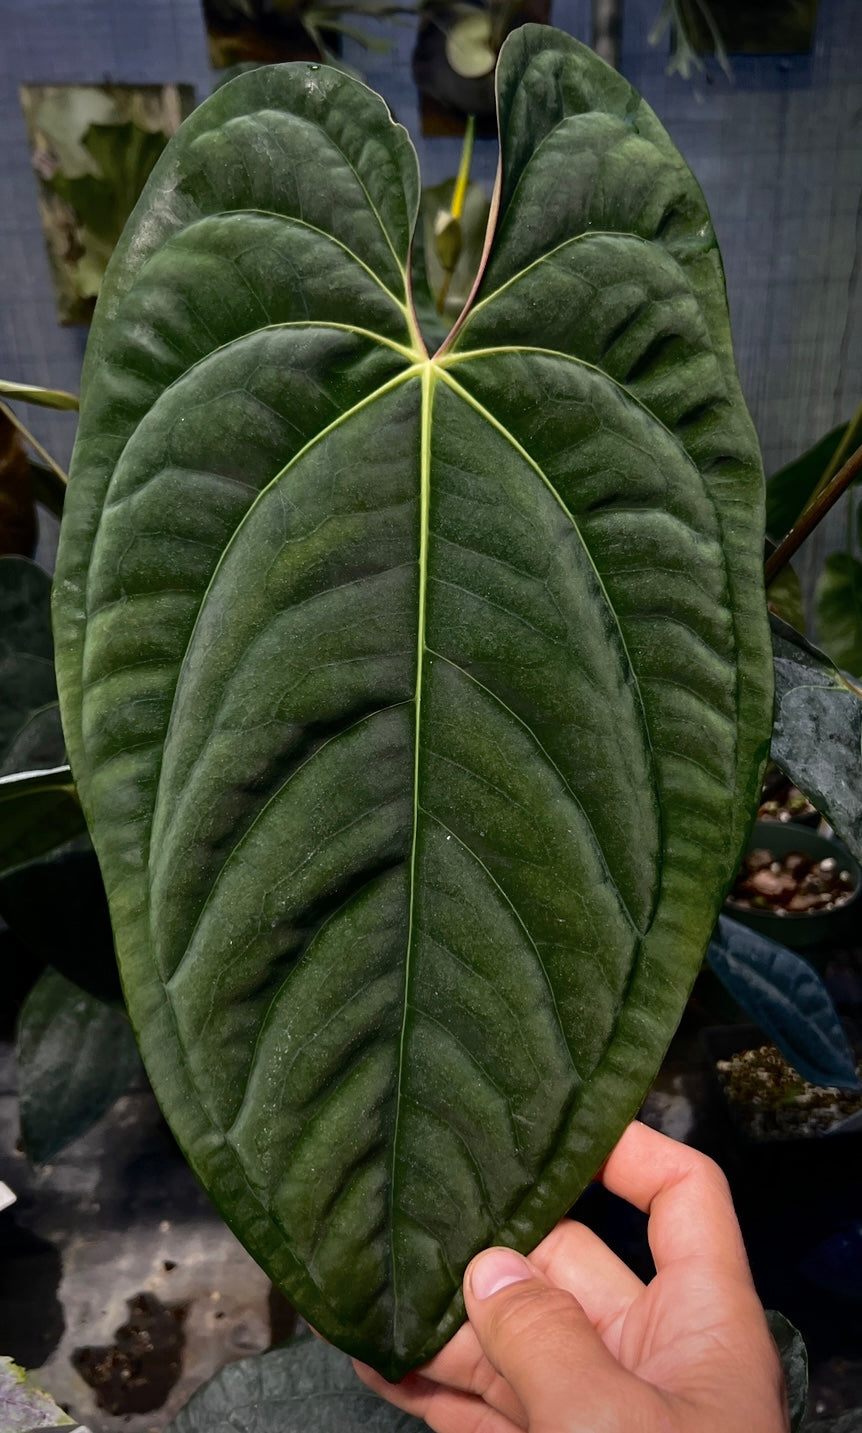 Anthurium papillilaminum "Dadbod" x "Swamp Bunny"